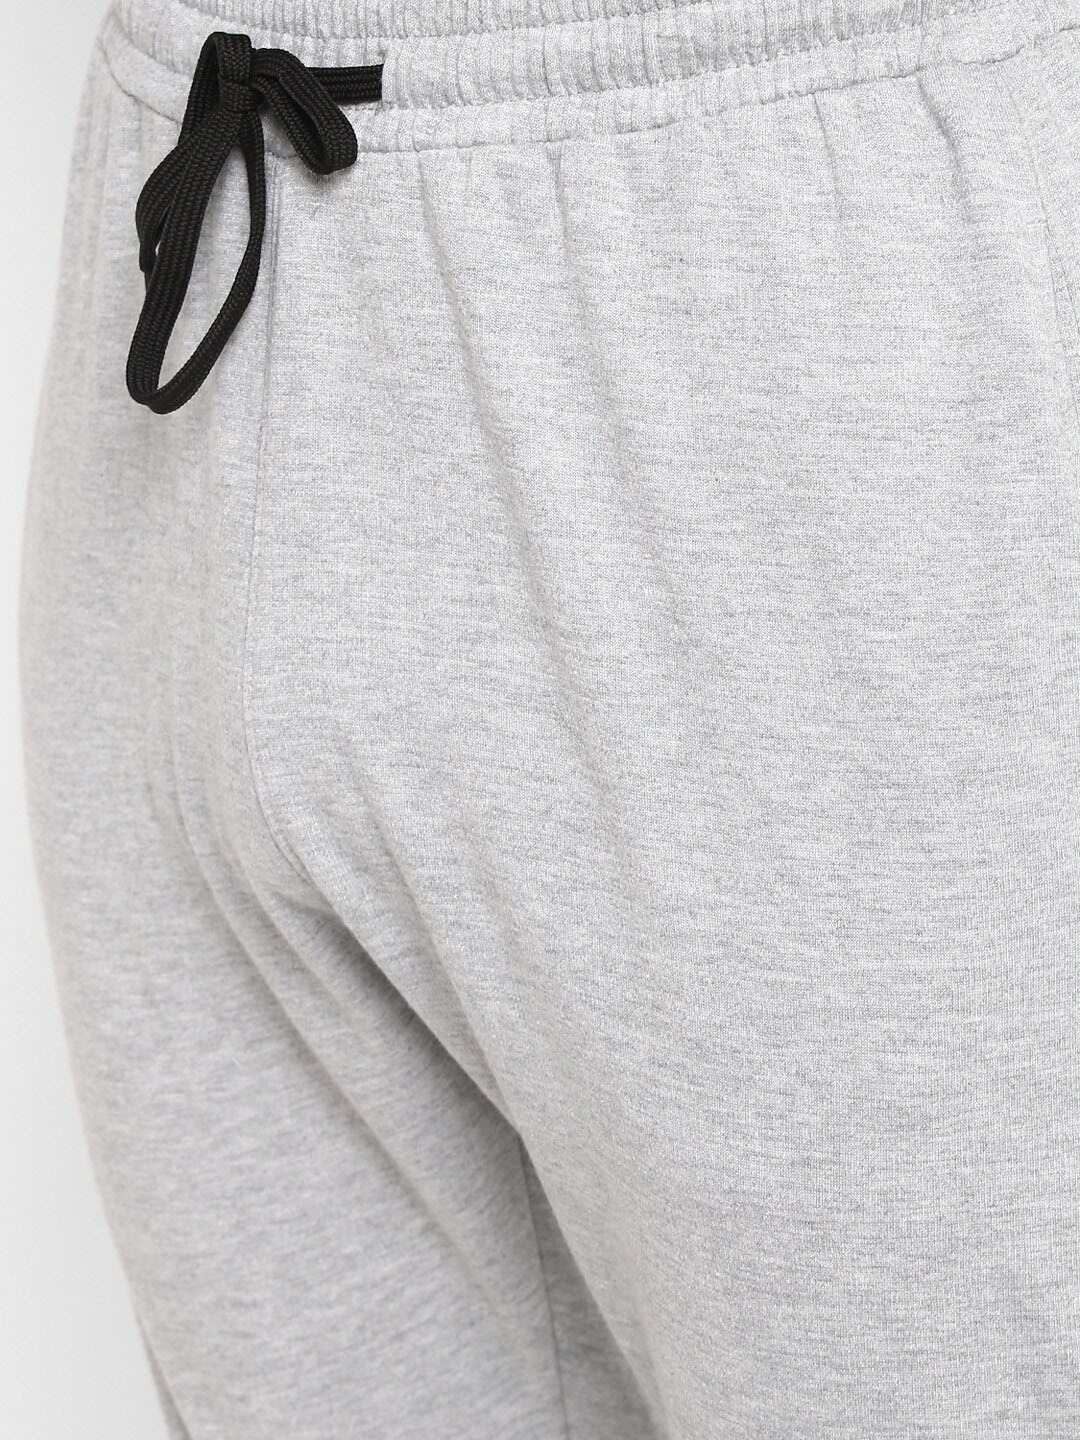 Clothing Tracksuits | OFF LIMITS Men Grey Melange & Black Solid Track Suit - AT50203